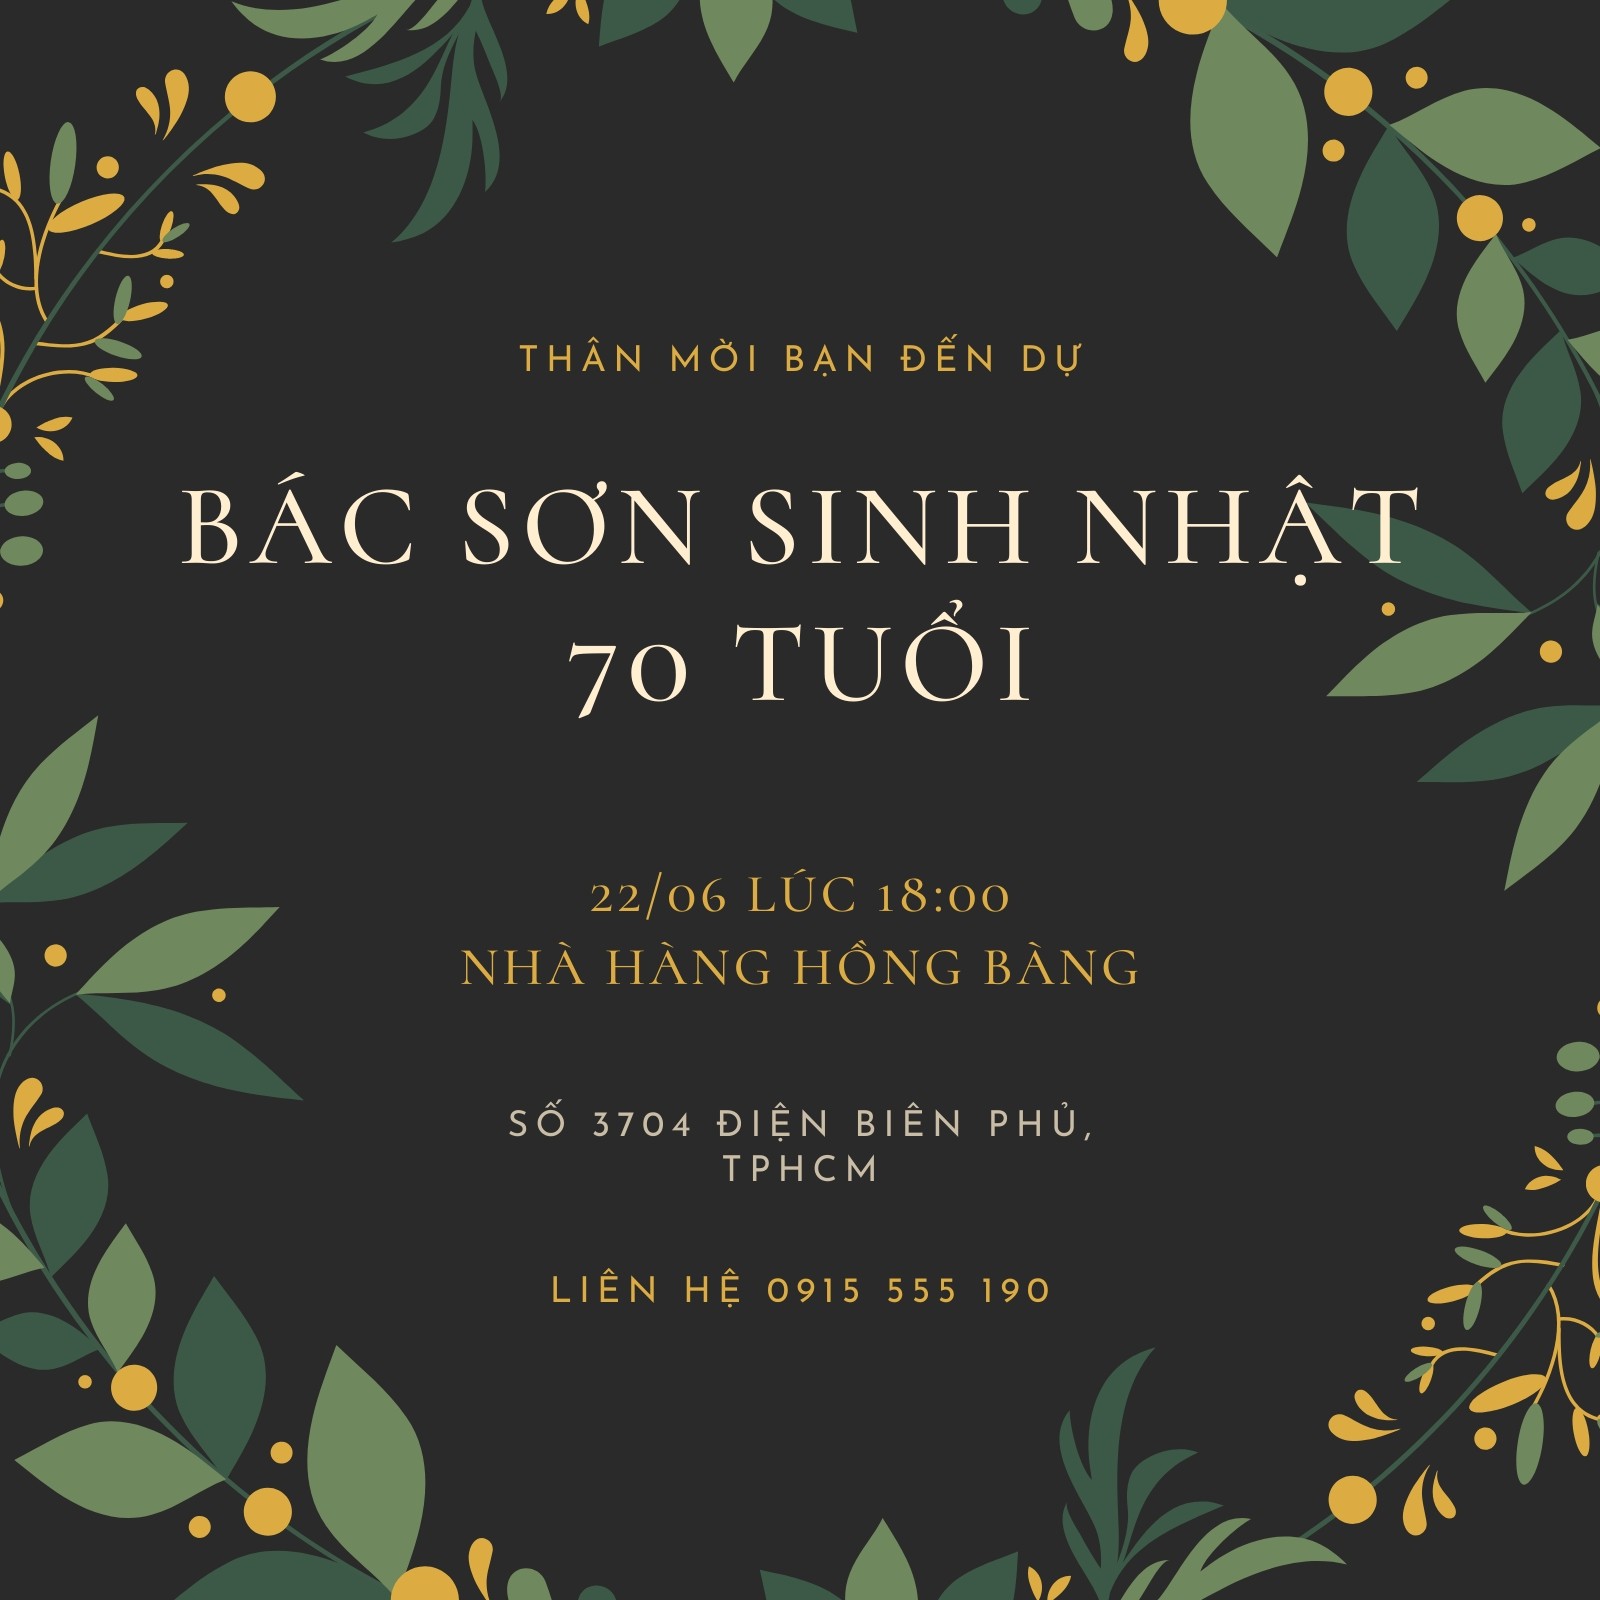 Top 3 mẫu thiệp chúc mừng sinh nhật bố sang trọng nhất năm nay Craft  More  Vietnam  vietgiftcentercom